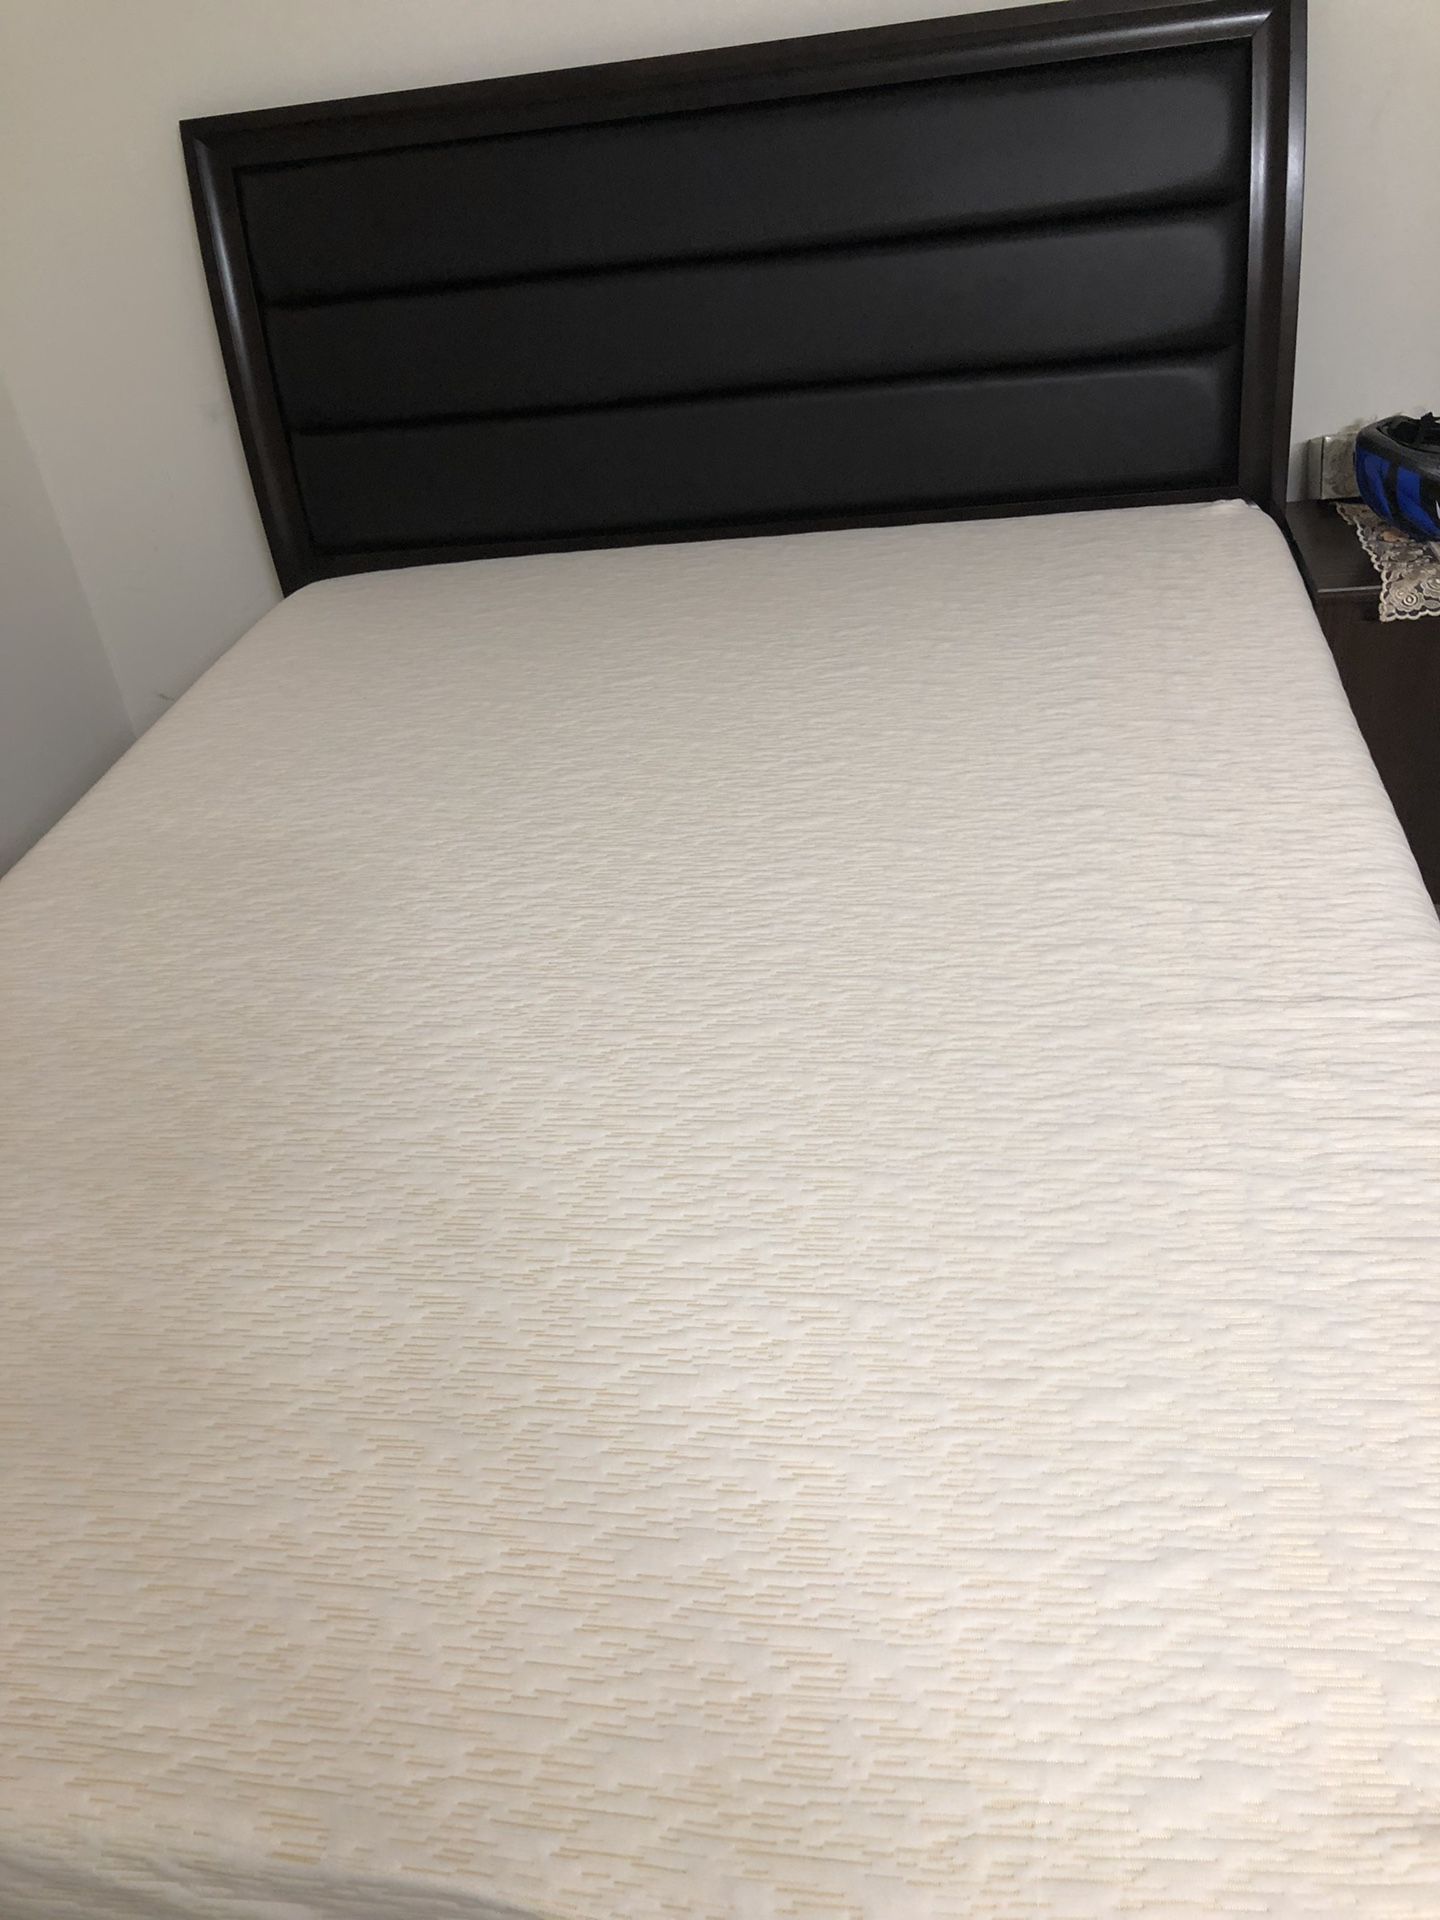 Brand new queen size memory foam mattress